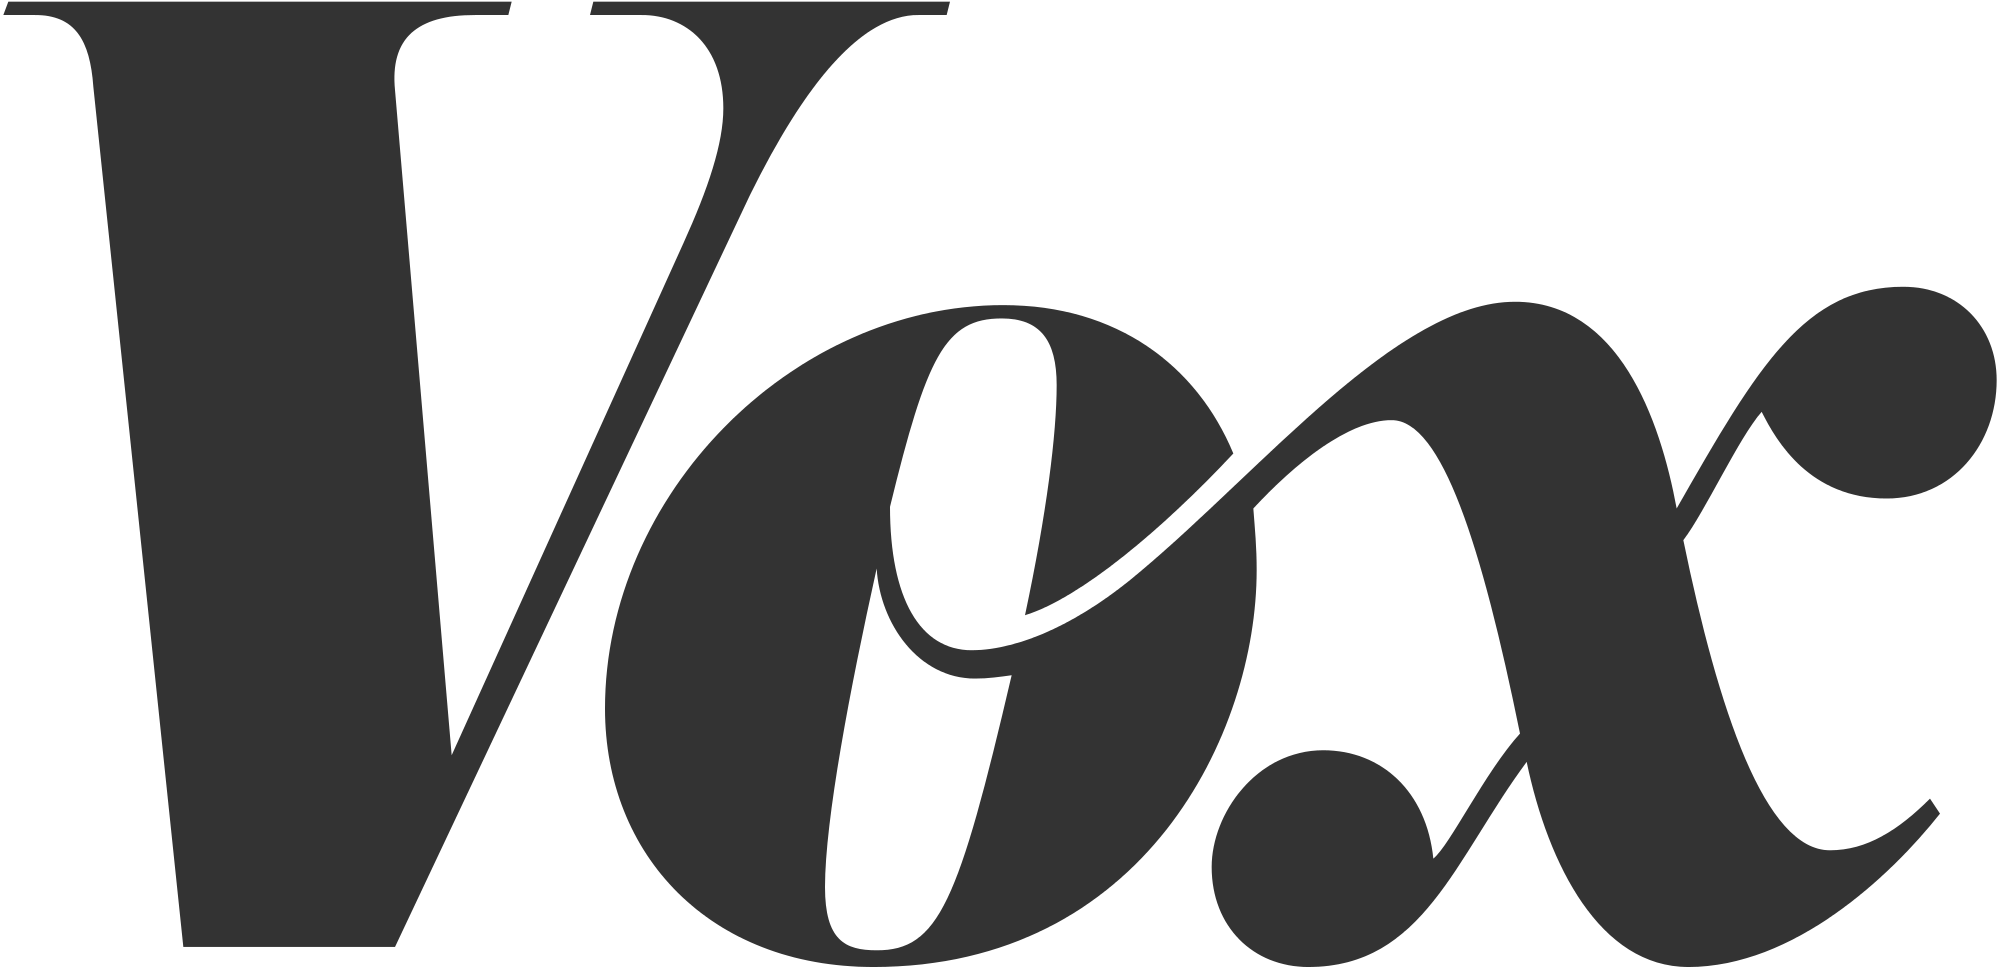 typografie - Welke lettertypecategorie is het Vox-logo? - Grafisch ontwerp ...